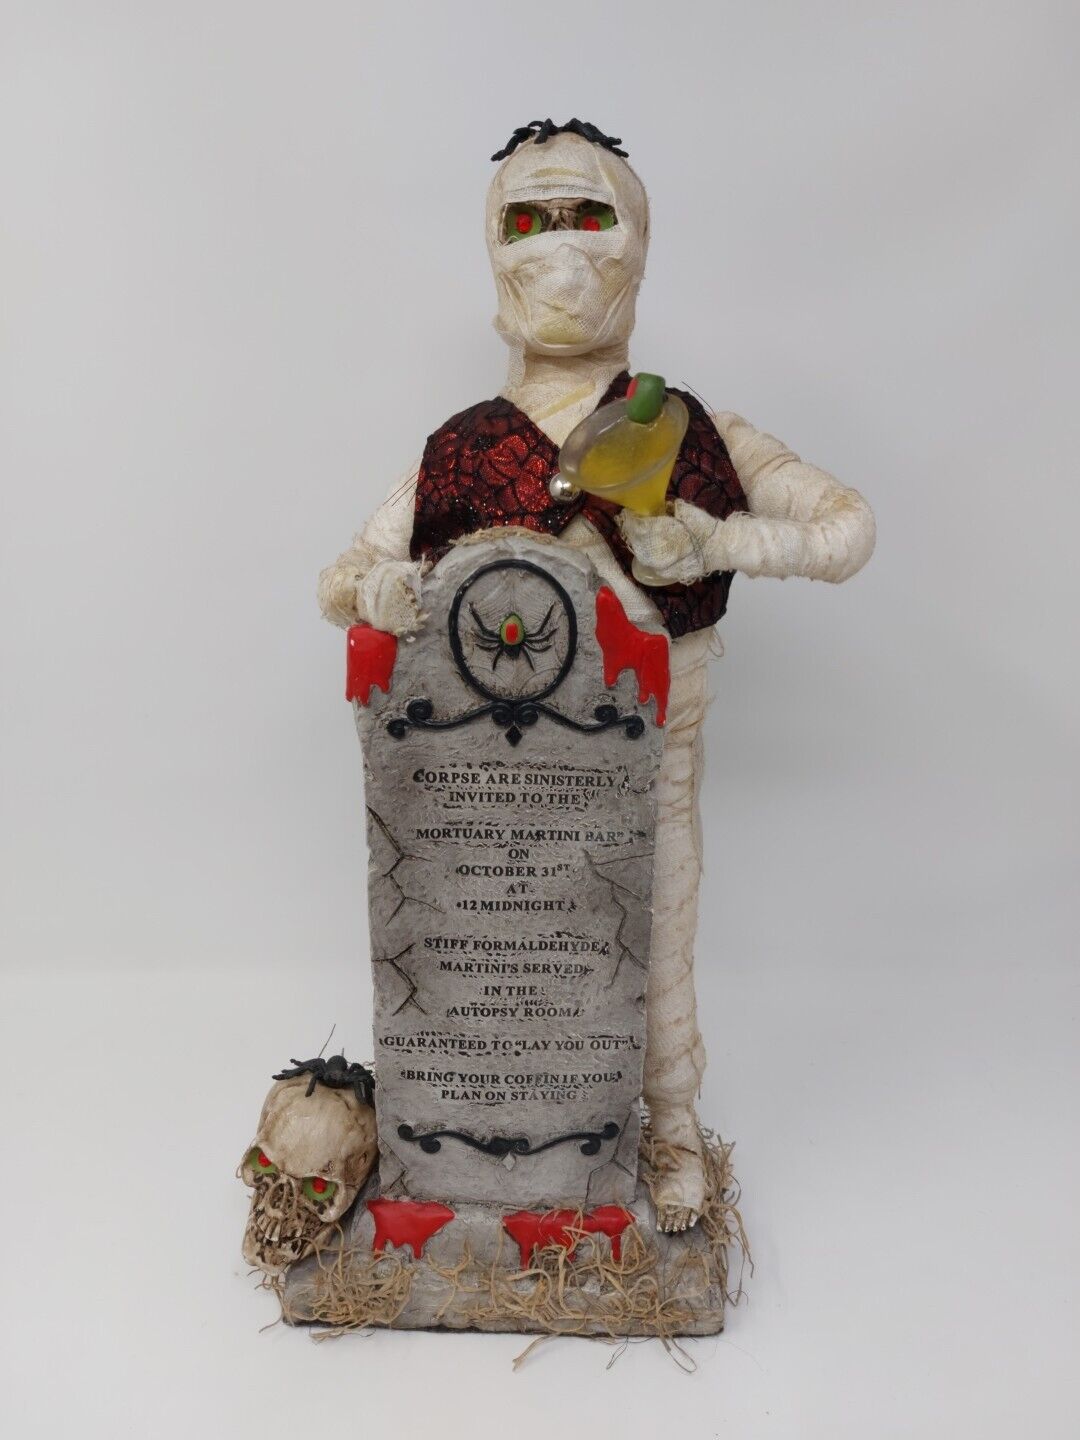 KAREN DIDION Crakewood Collection Halloween Figurine Mummy Mortuary Martini Bar